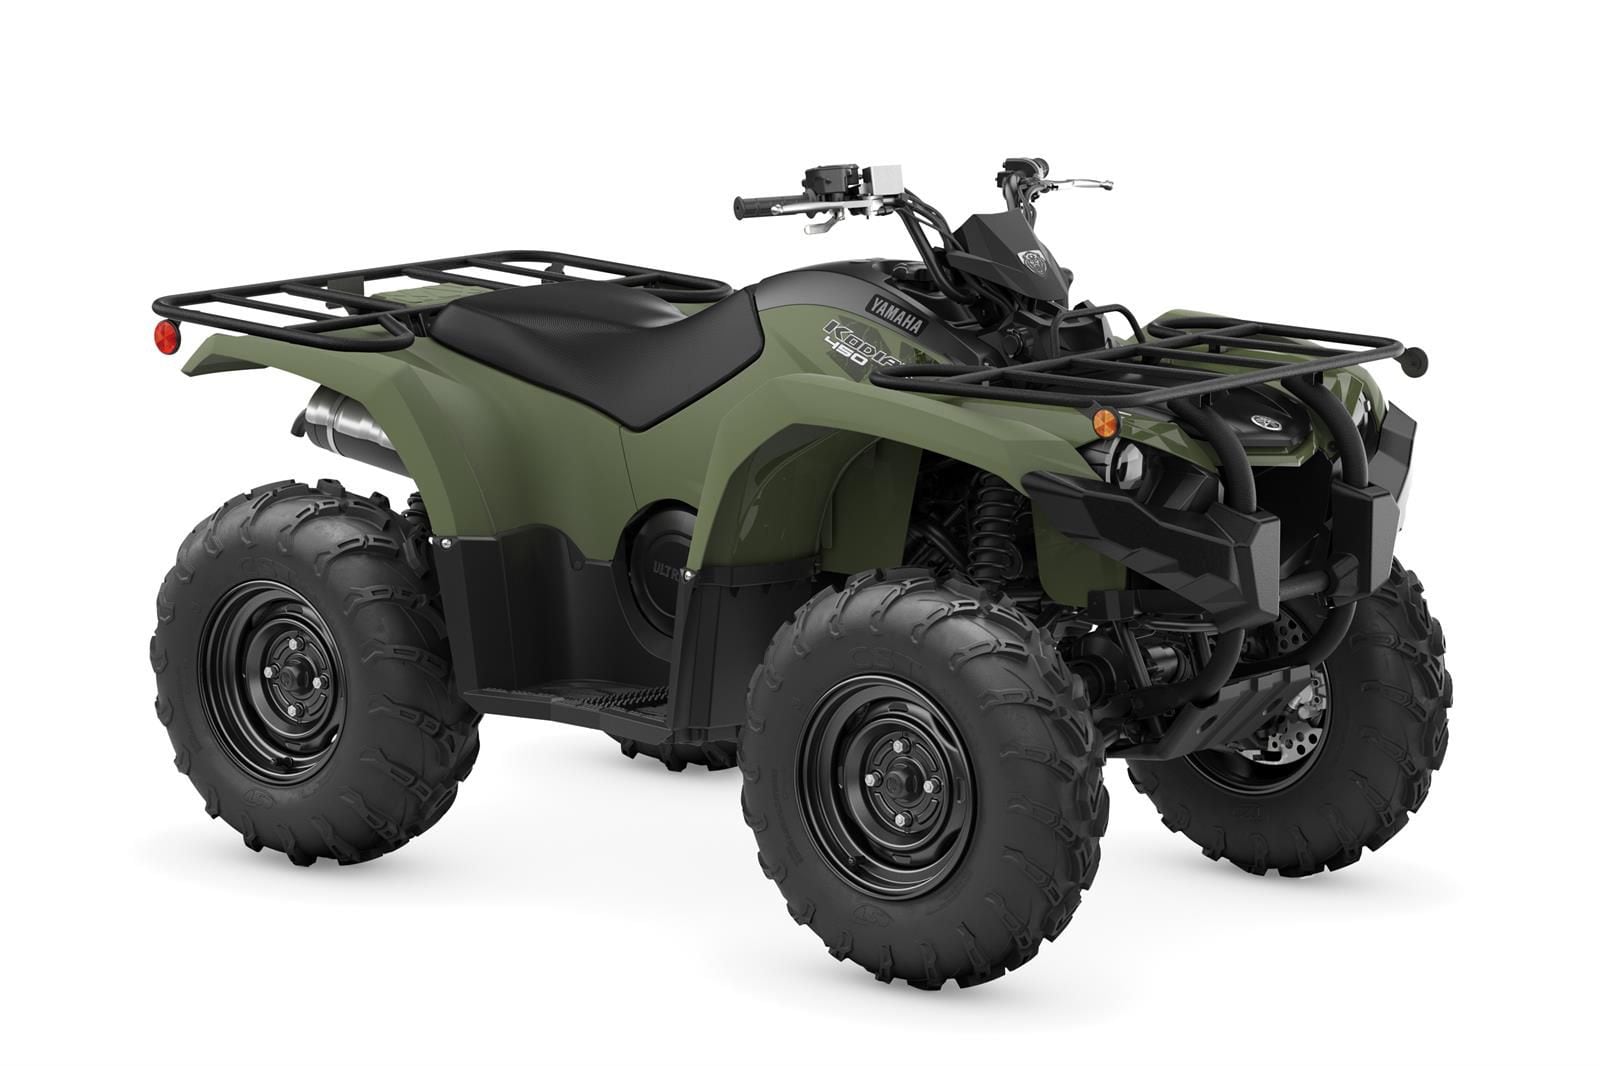 The 2022 Yamaha Kodiak 450 in Tactical Green.